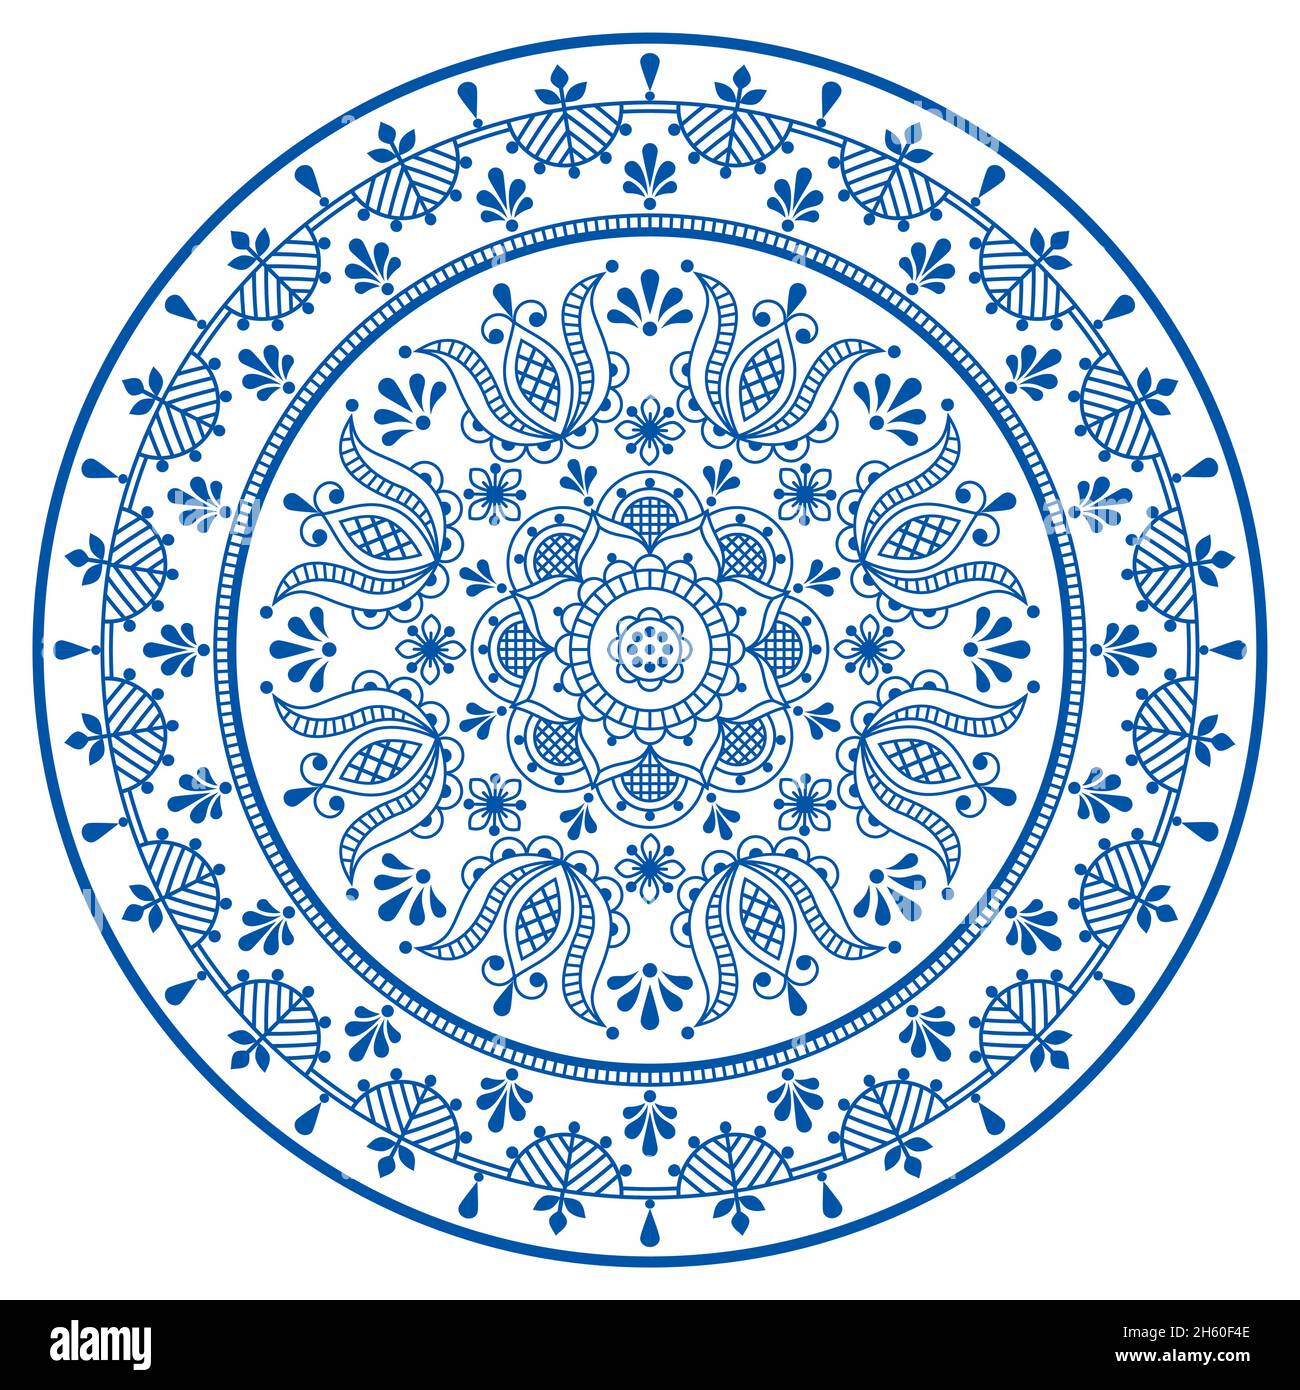 Skandinavische Blumen Mandala Vektor-Stickerei Folk Art Stil - nordische Umriss runden Muster mit Blumen und Blättern in blau auf weiß Stock Vektor